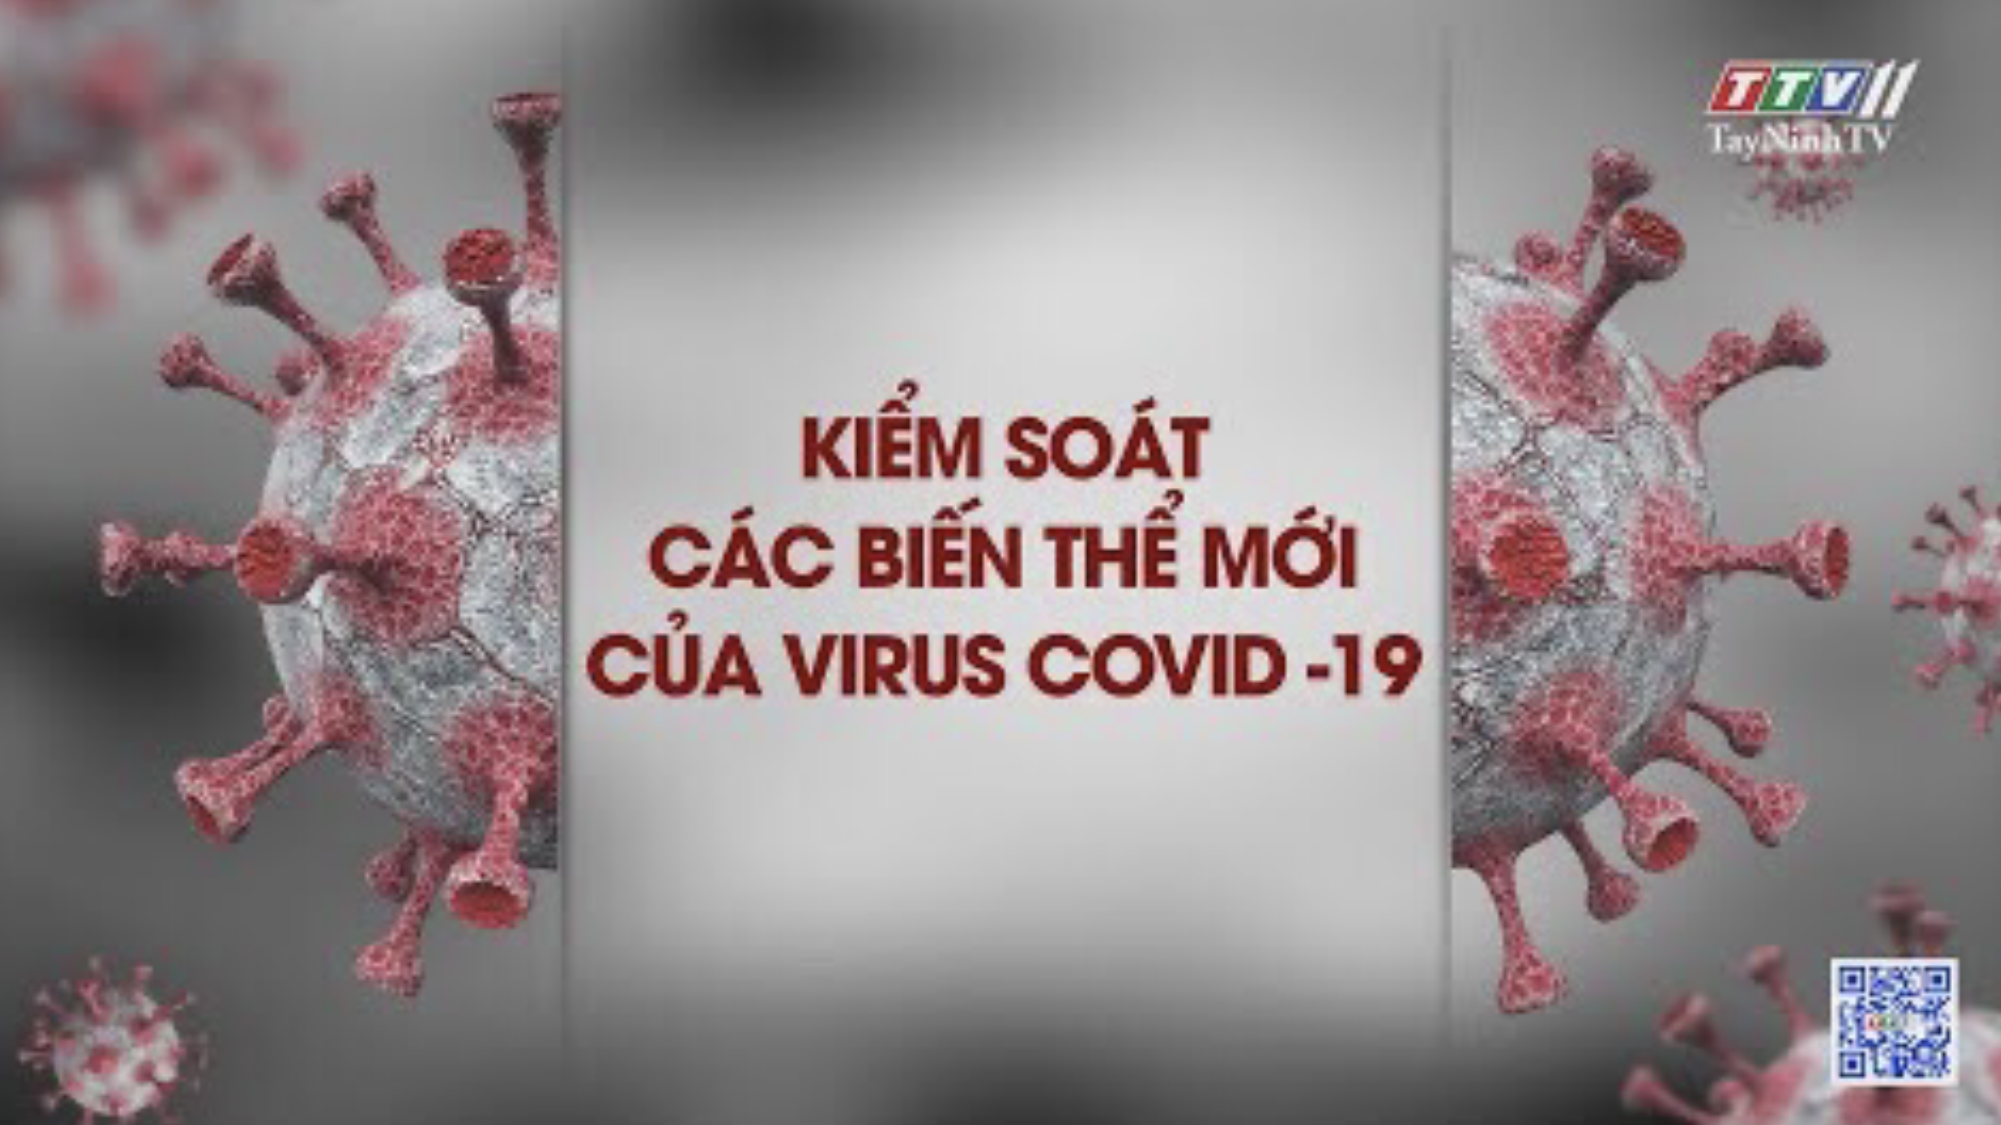 Kiểm soát các biến thể mới của virus COVID-19 | Phòng chống dịch bệnh COVID-19 | TayNinhTV